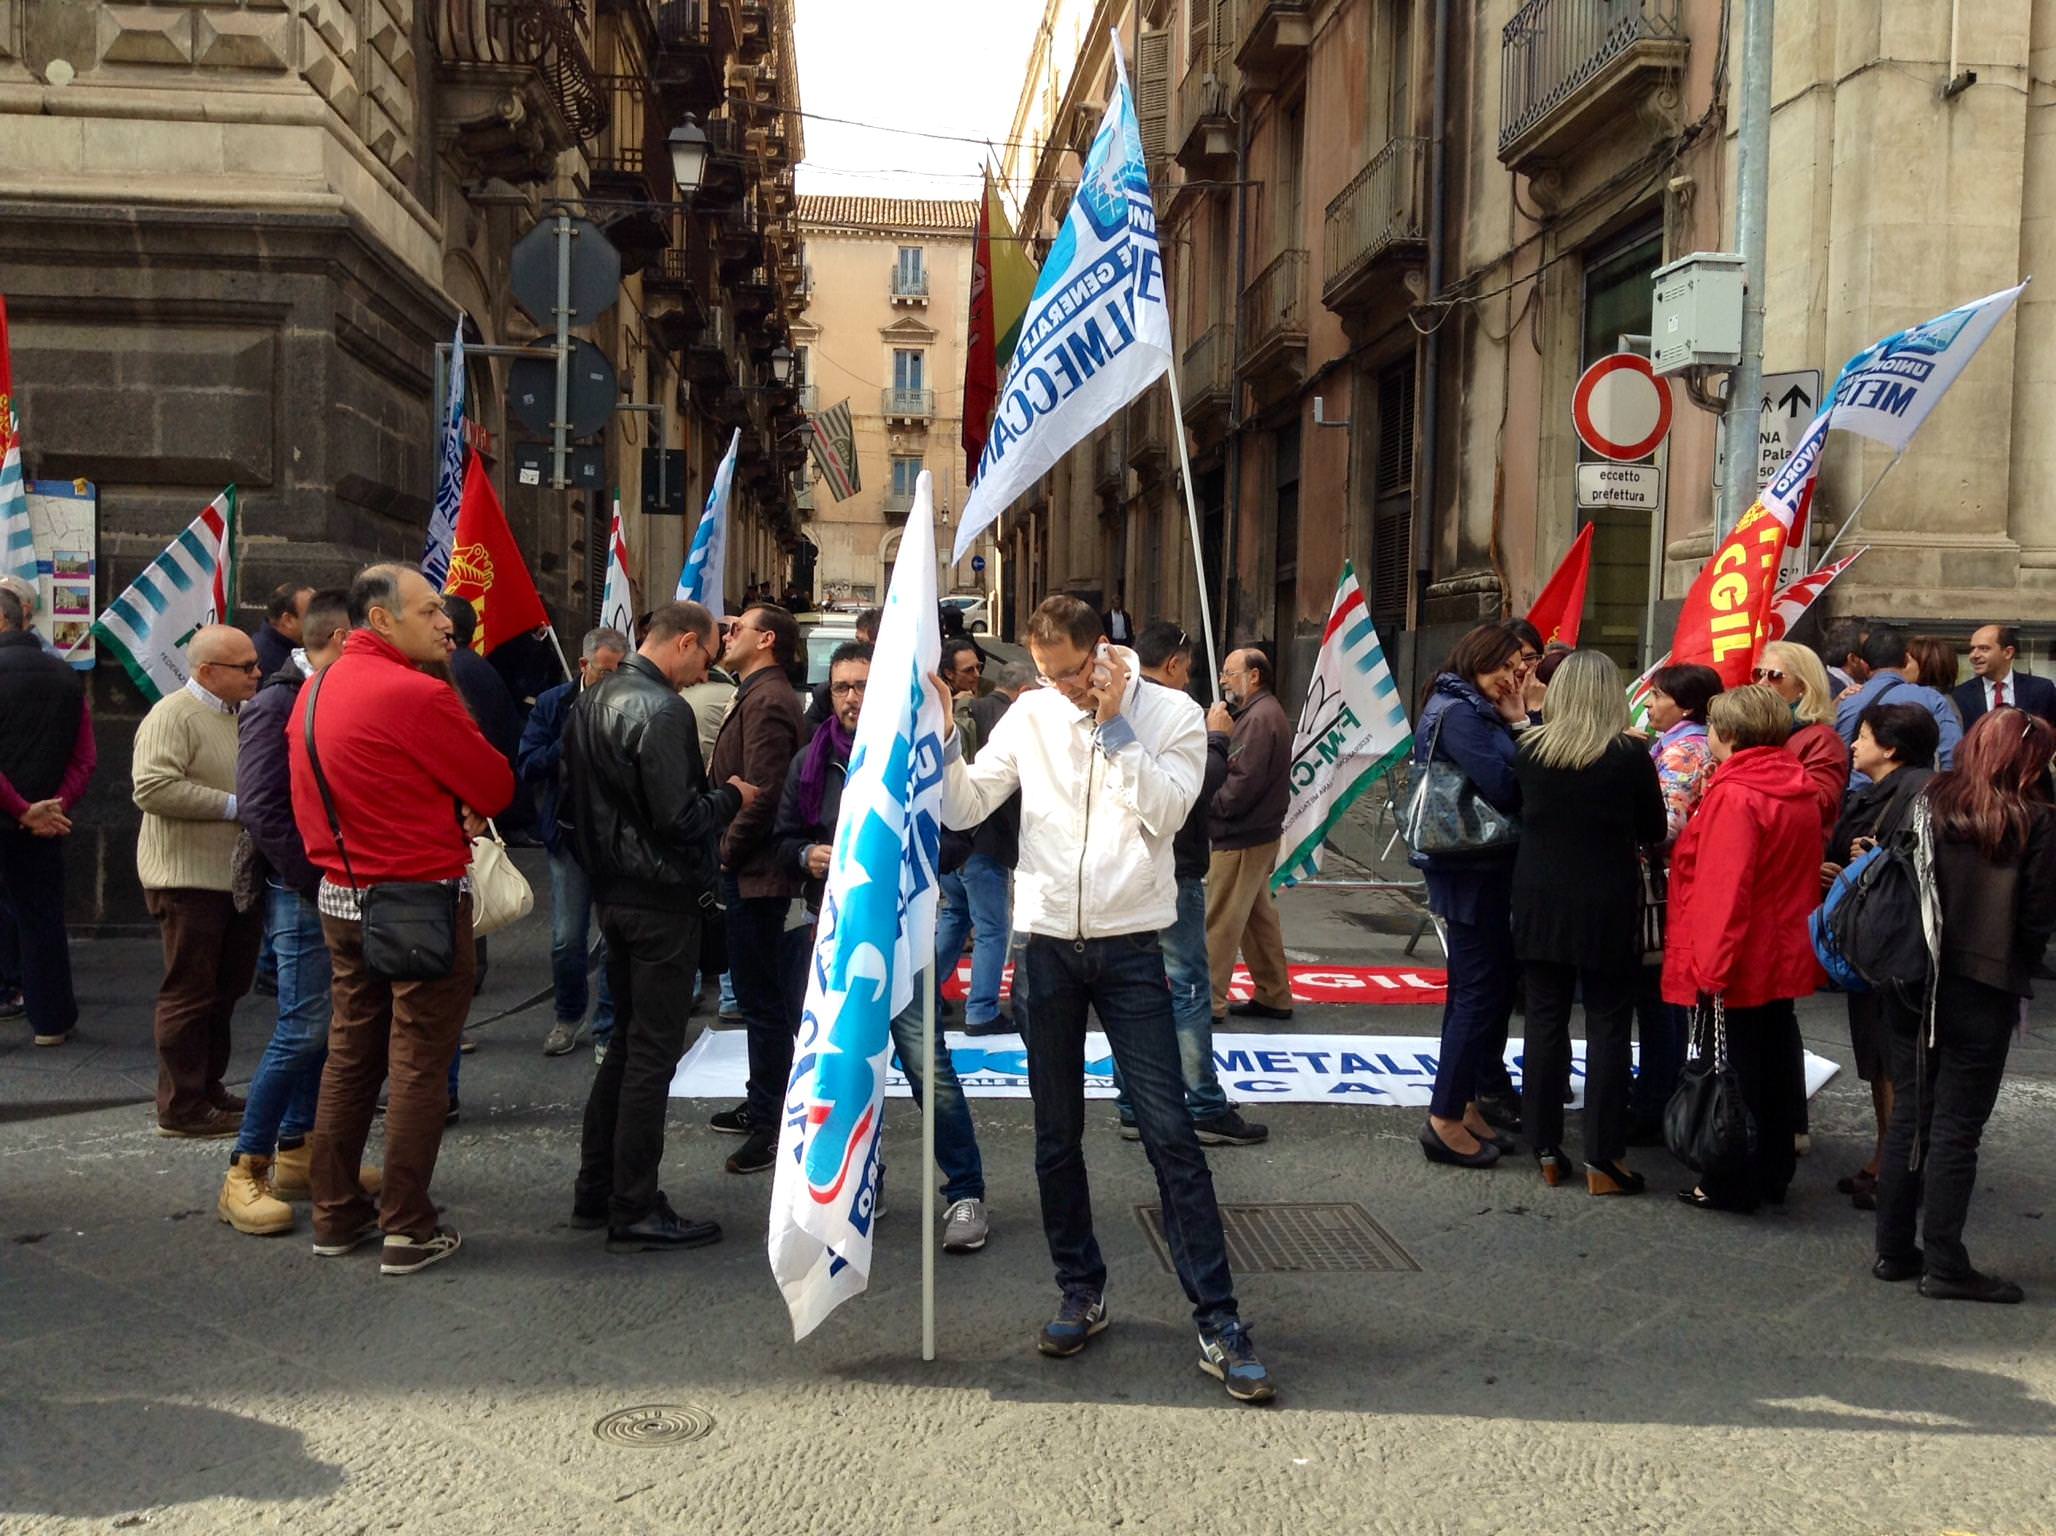 Solidarietà agli operai dell’Ast di Terni. A Catania sit-in dei sindacati